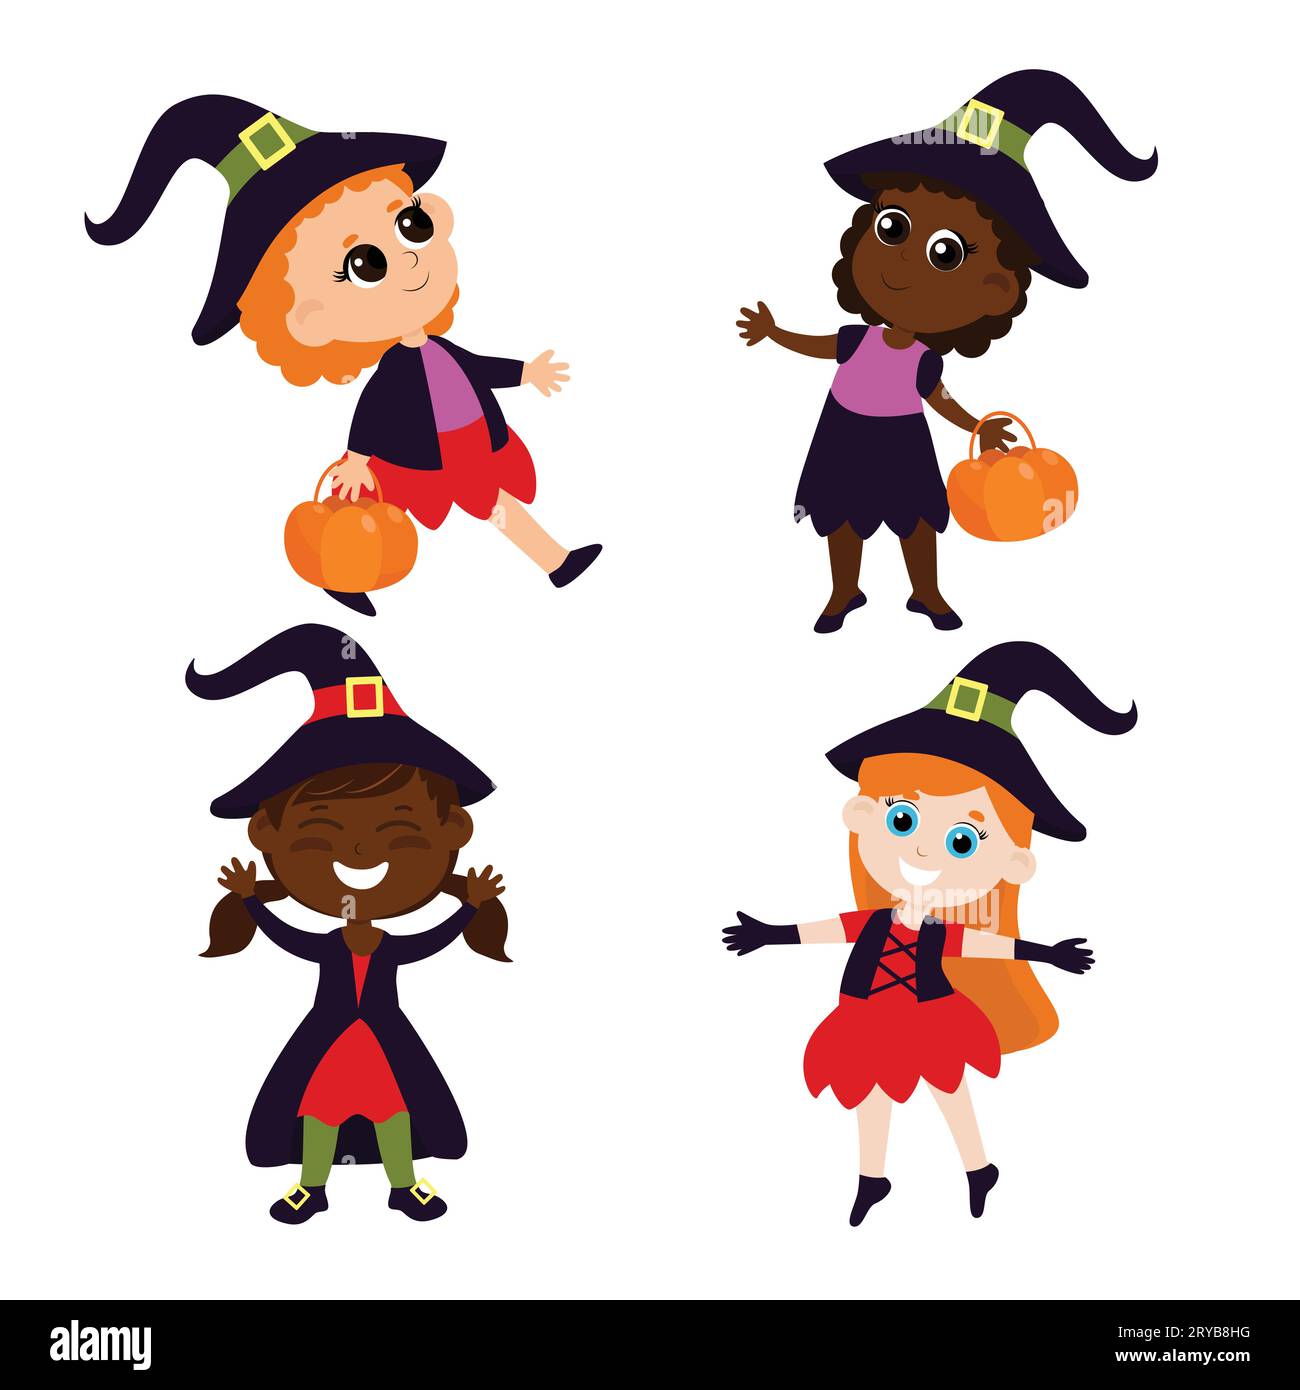 Niedliche Hexen mit rotem Haar in einem Kostüm mit einem Korb in den Händen. Set von Halloween-Illustration im Cartoon-Stil isoliert auf weißem Hintergrund. Stock Vektor